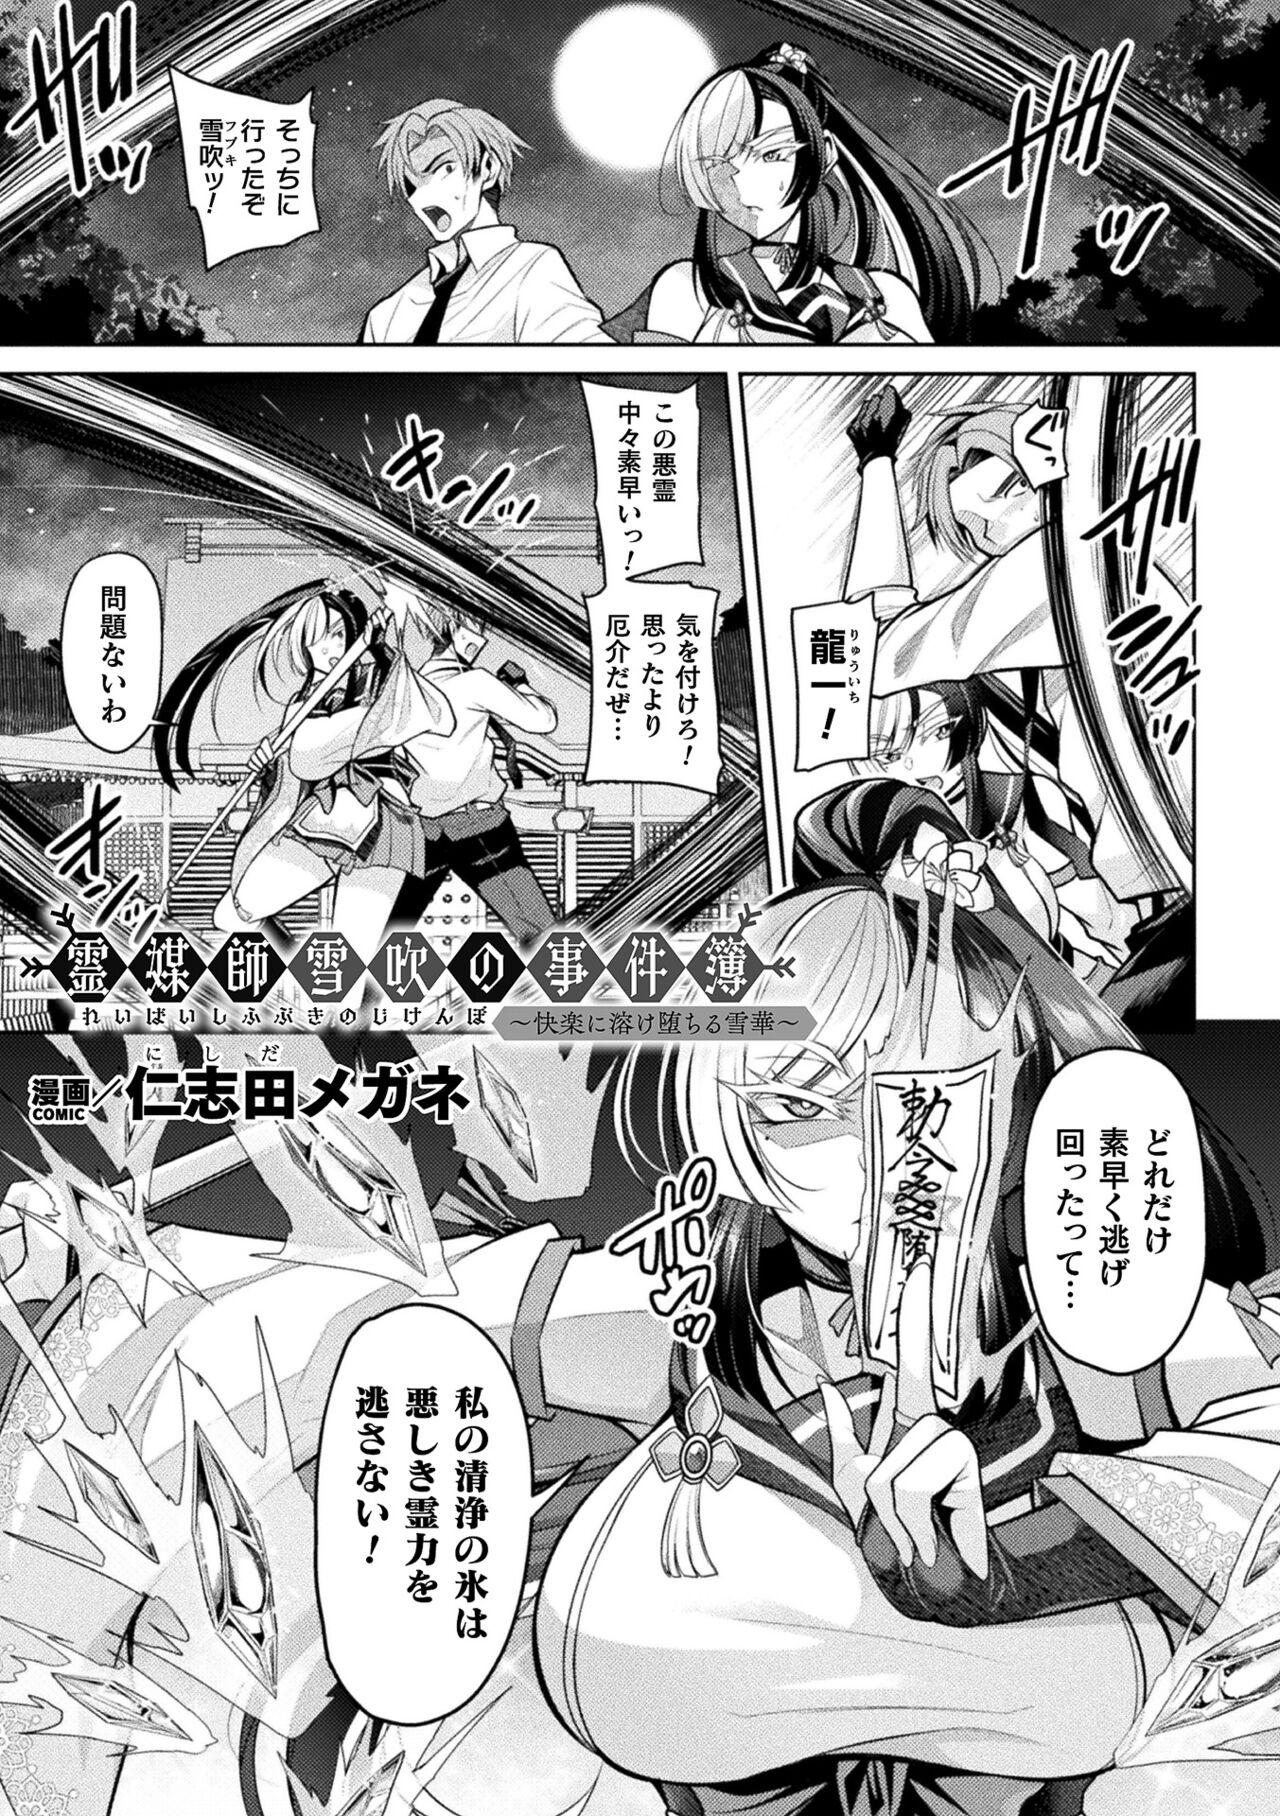 Corrida 2D Comic Magazine Akuochi Haramase Seigi no Bishoujo Akuten Jutai Vol. 2 Nudity - Picture 3